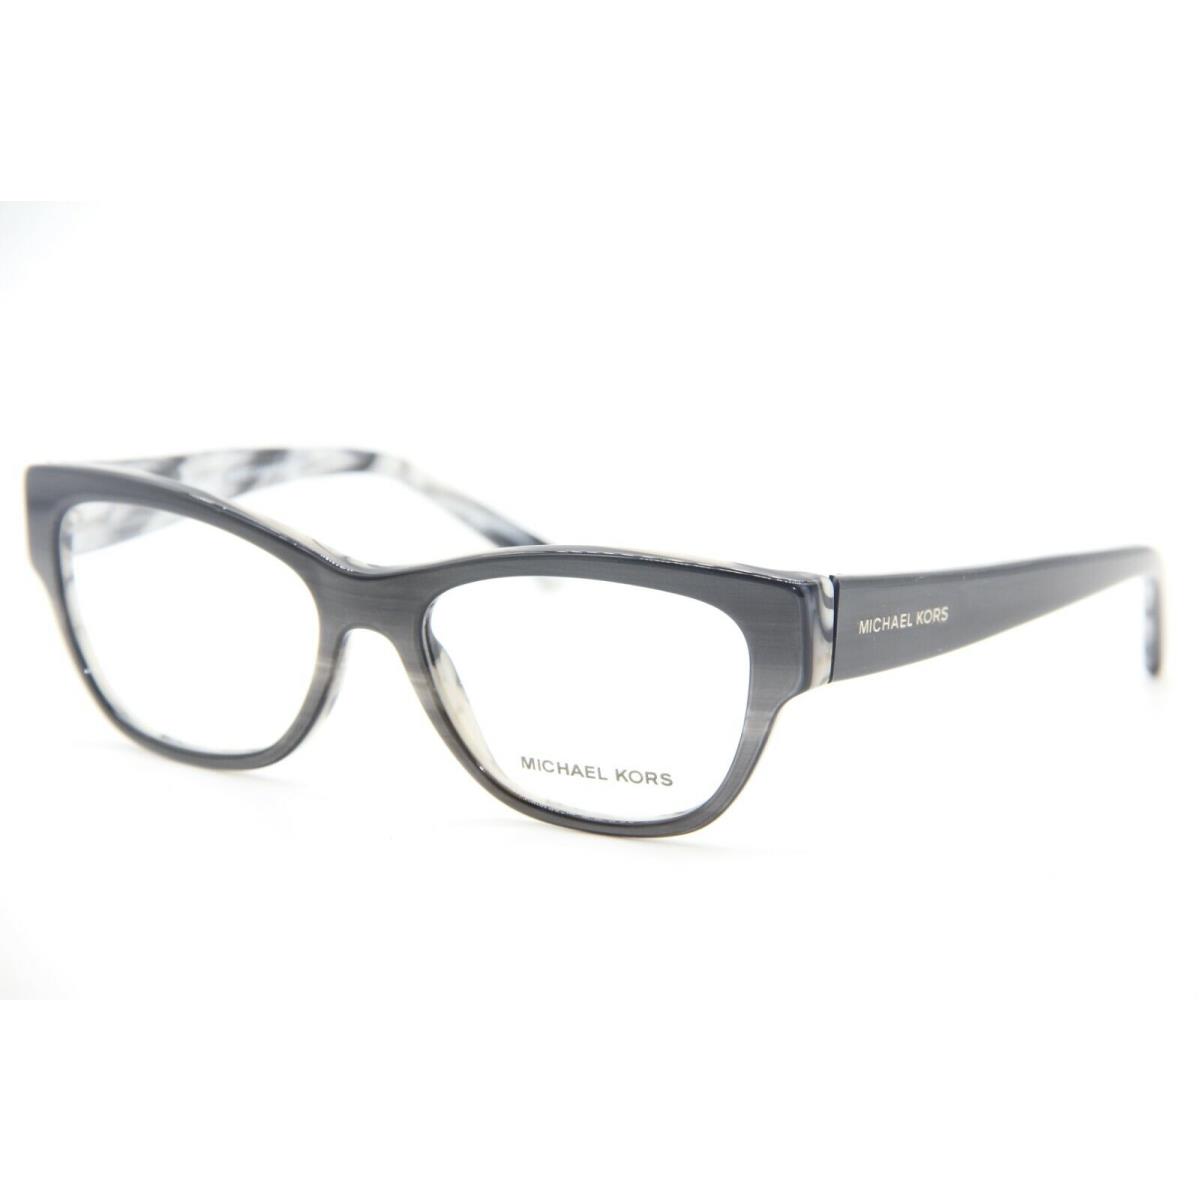 Michael Kors MK 4037 3211 Black Horn Eyeglasses Frame MK4037 51-16